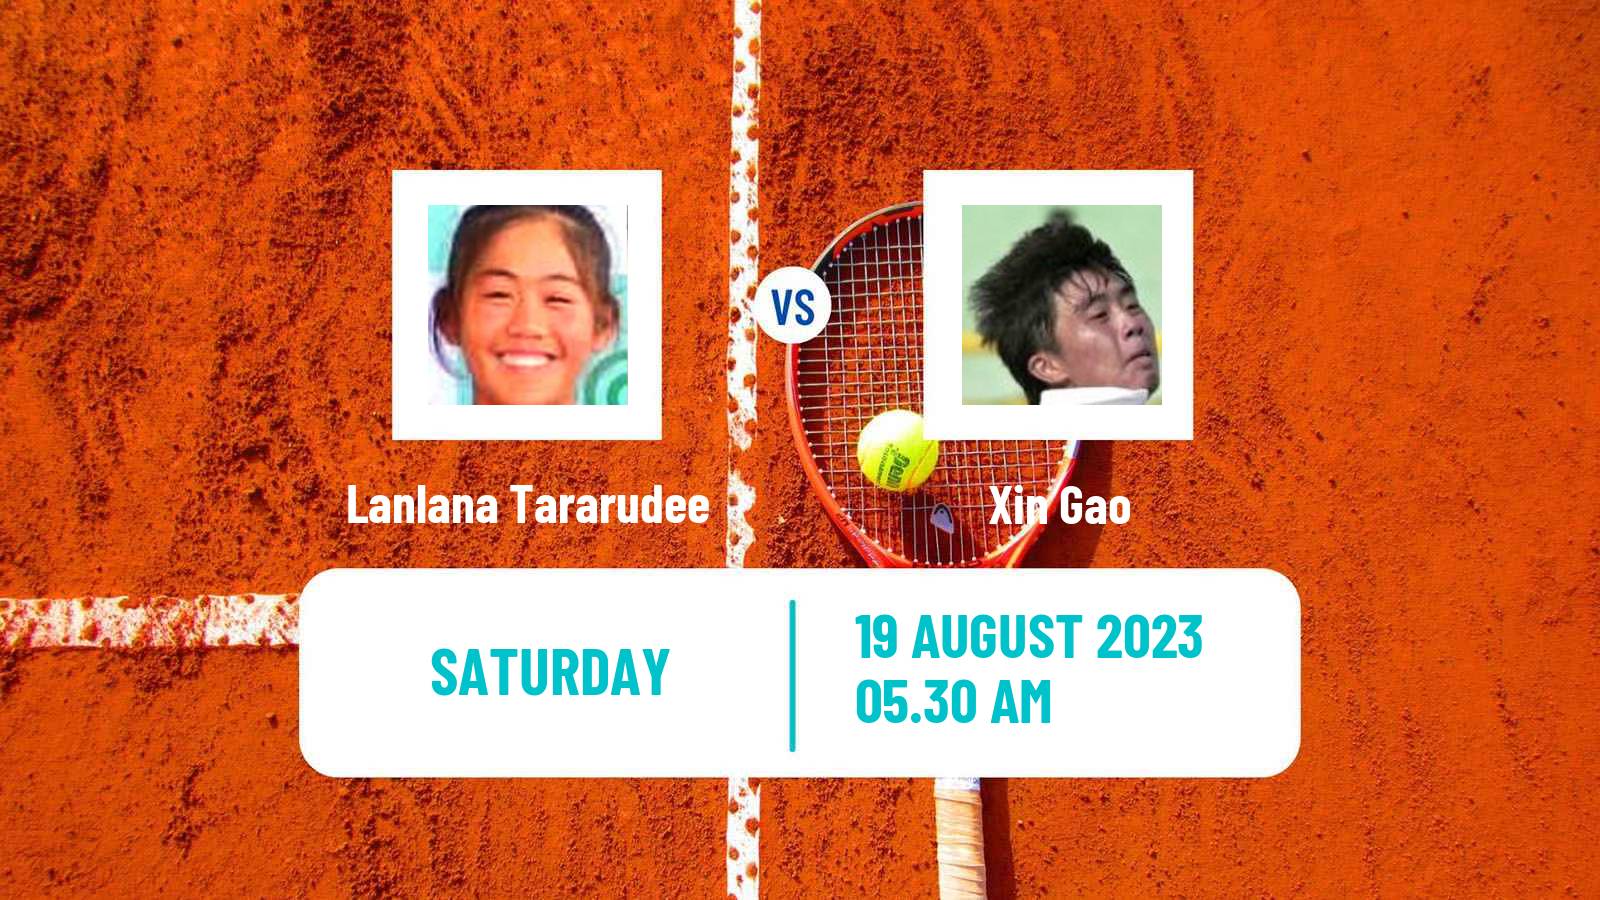 Tennis ITF W40 Nanchang Women Lanlana Tararudee - Xin Gao